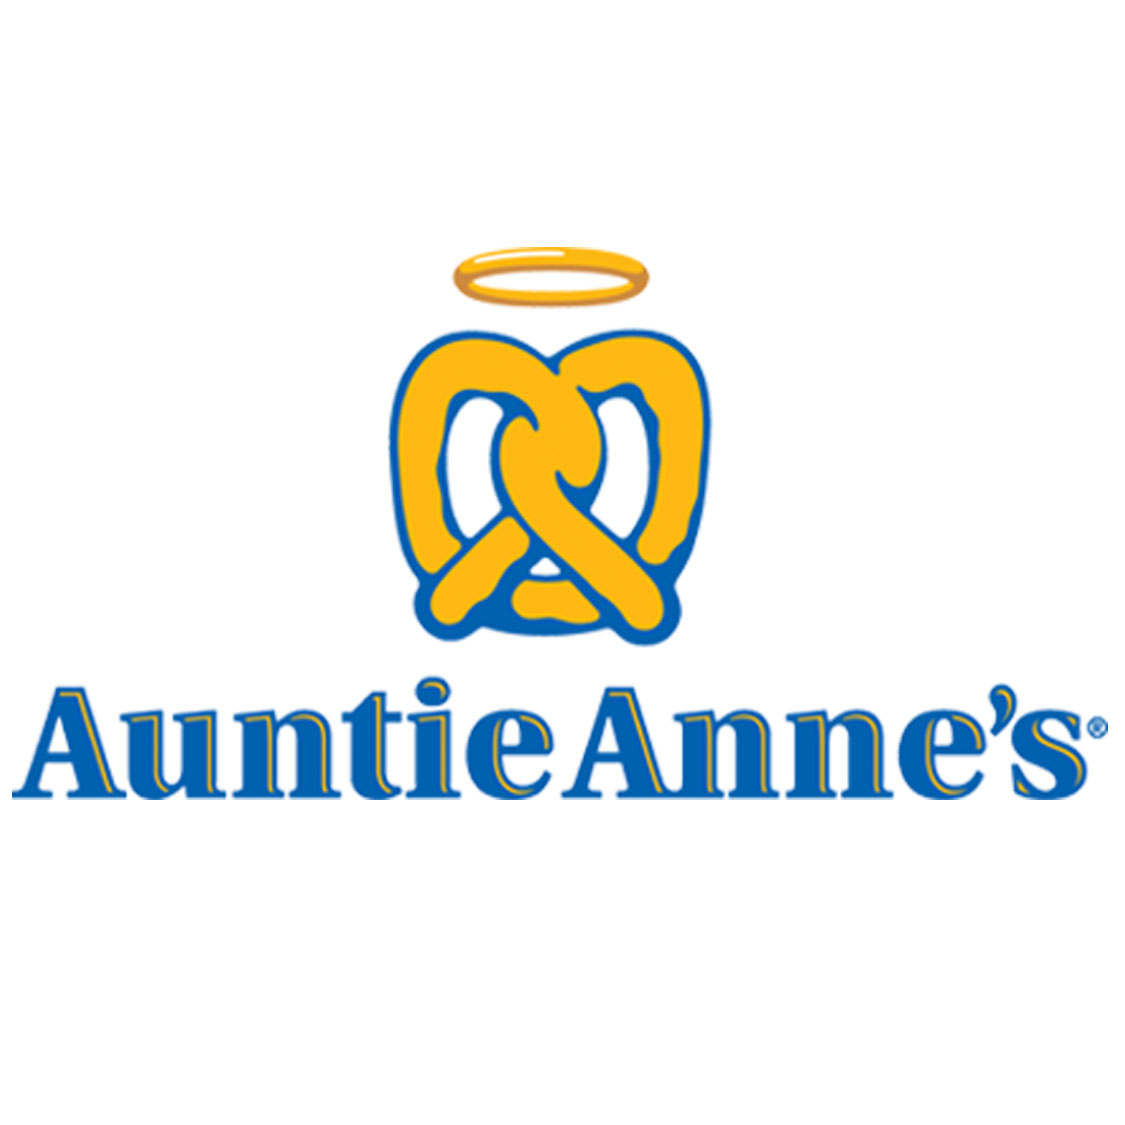 Auntie Anne's.jpg